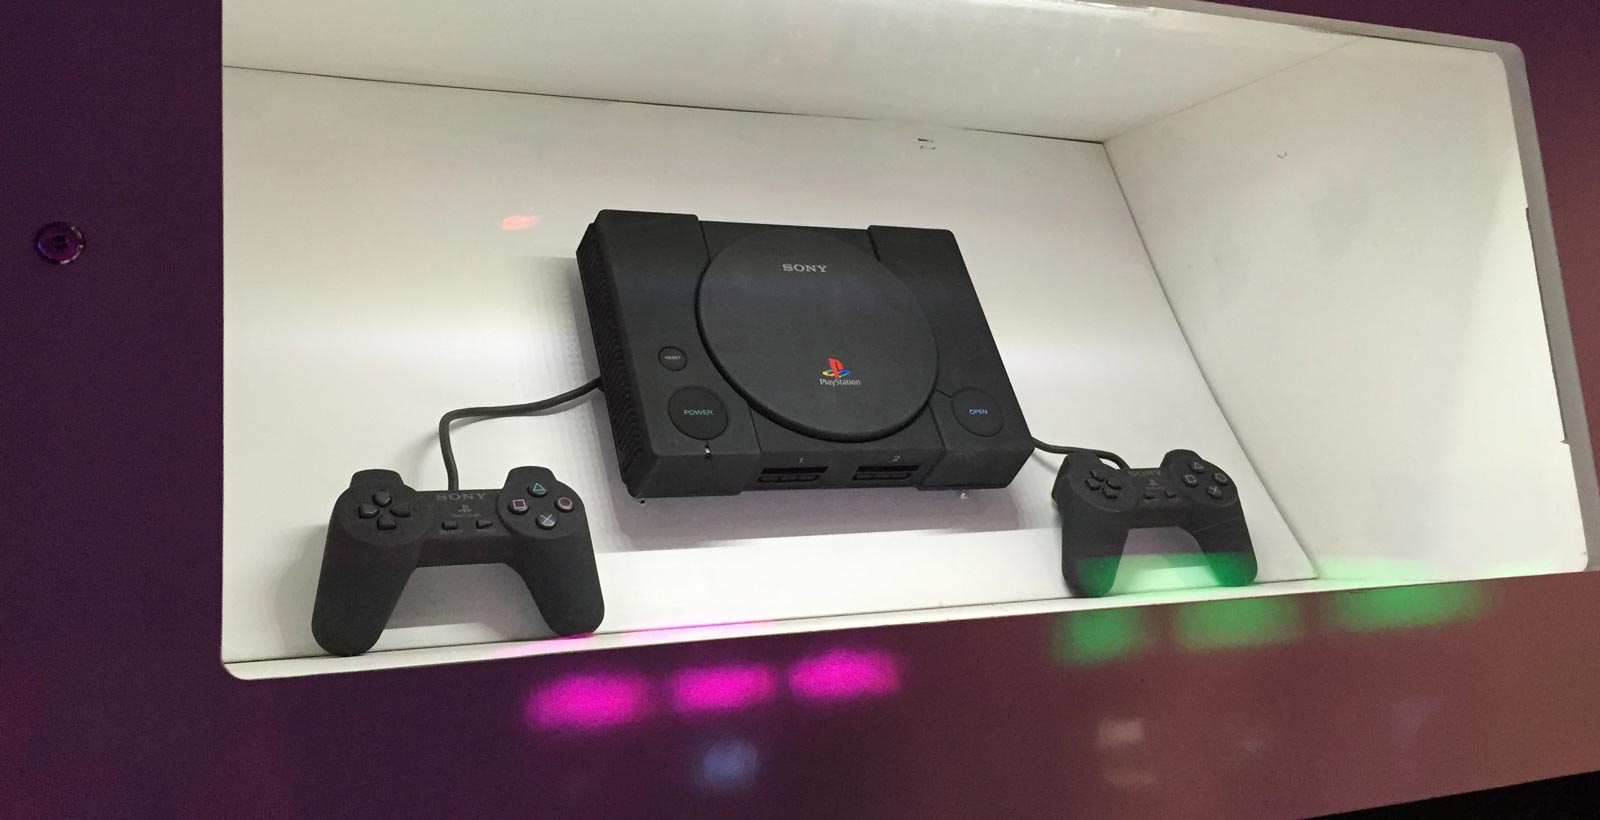 La Net Yaroze, une version noire de la PlayStation destinée aux développeurs amateurs, telle que présentée à Game On.